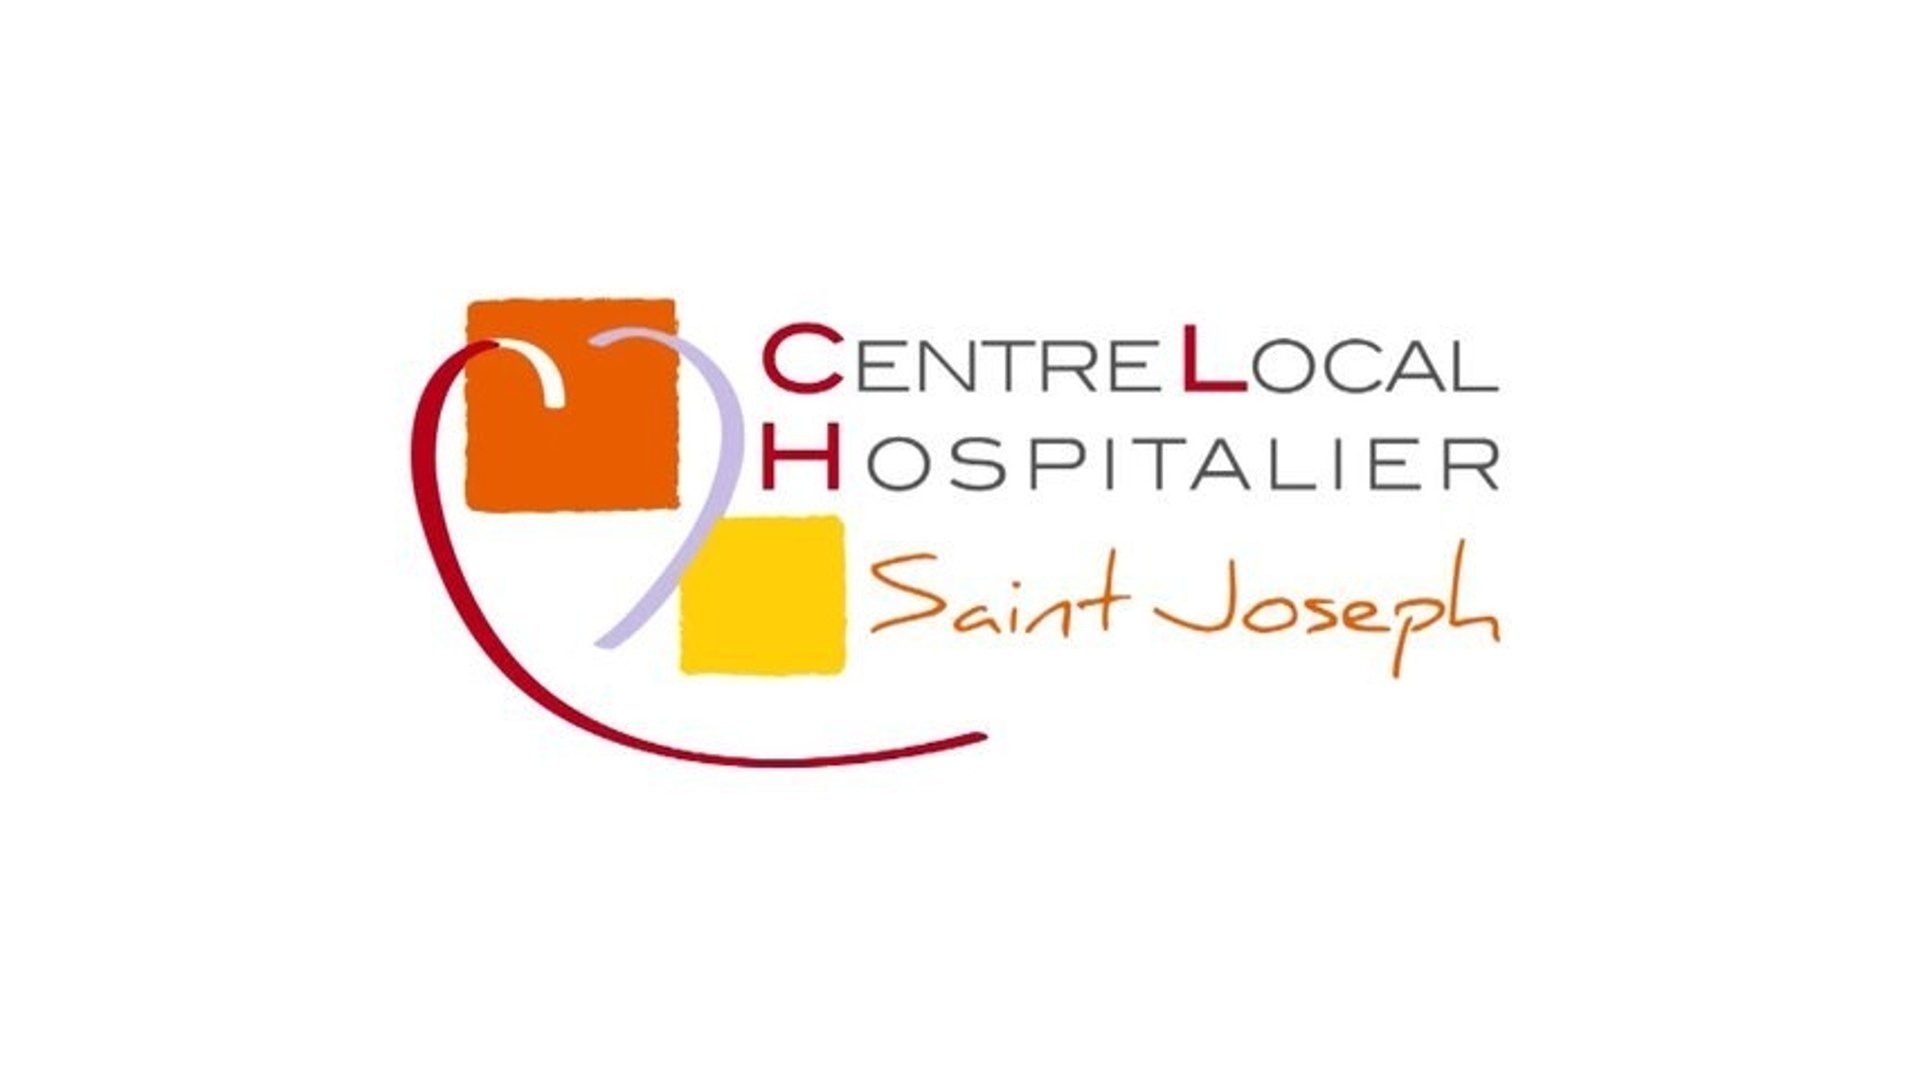 Cliniques - Clinique Saint Joseph à Combourg - Vidéo Dailymotion